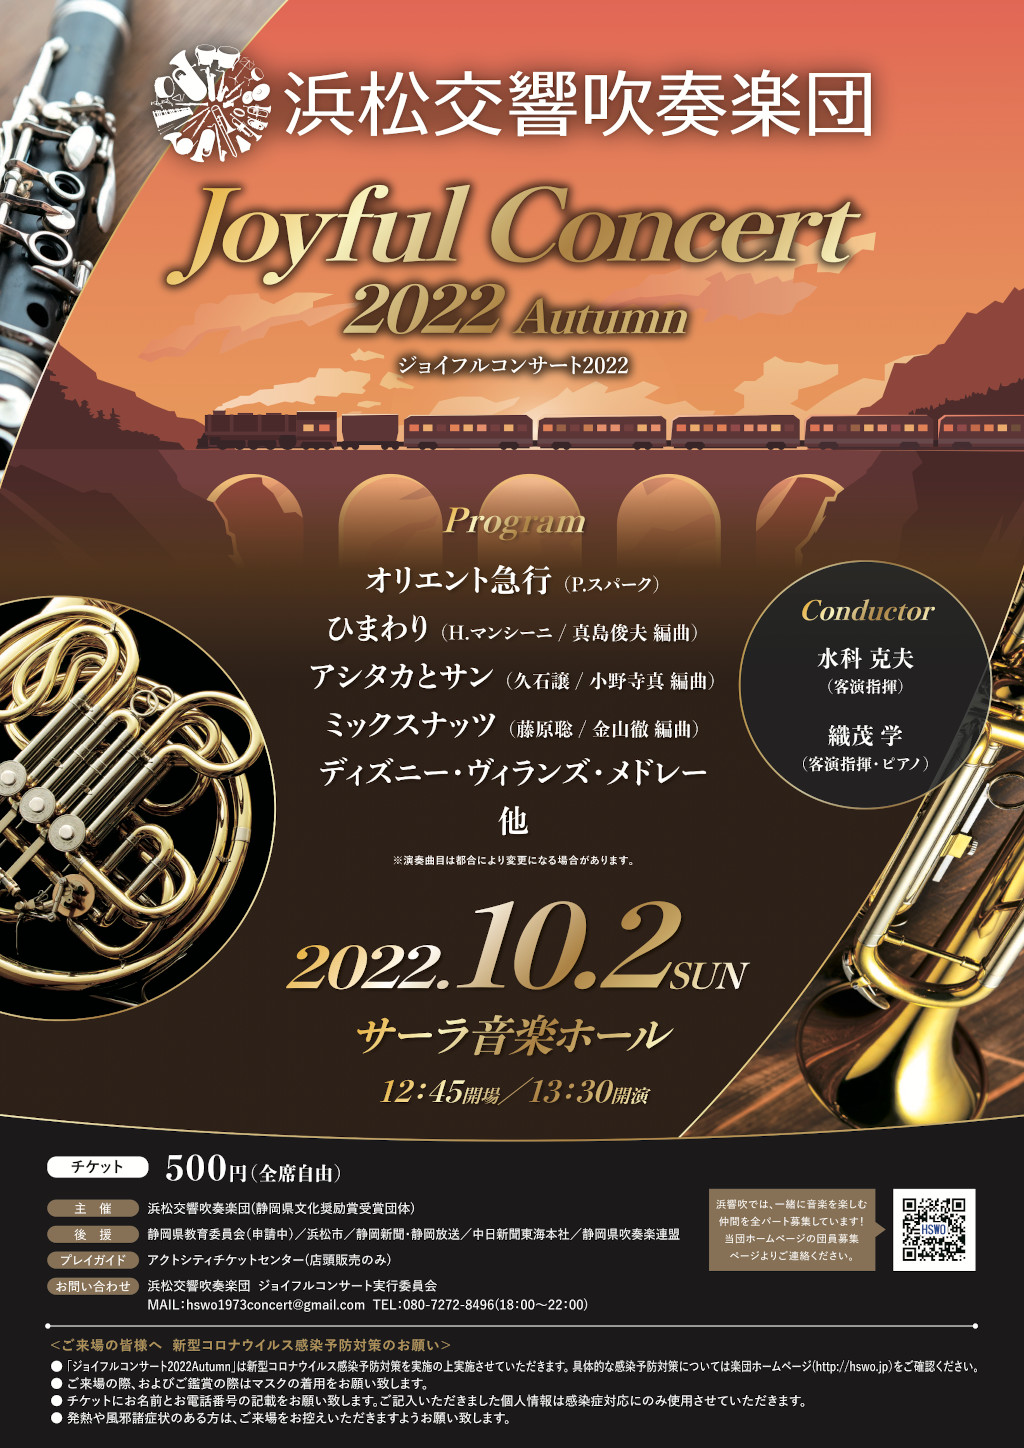 Joyful Concert 2022 Autumn